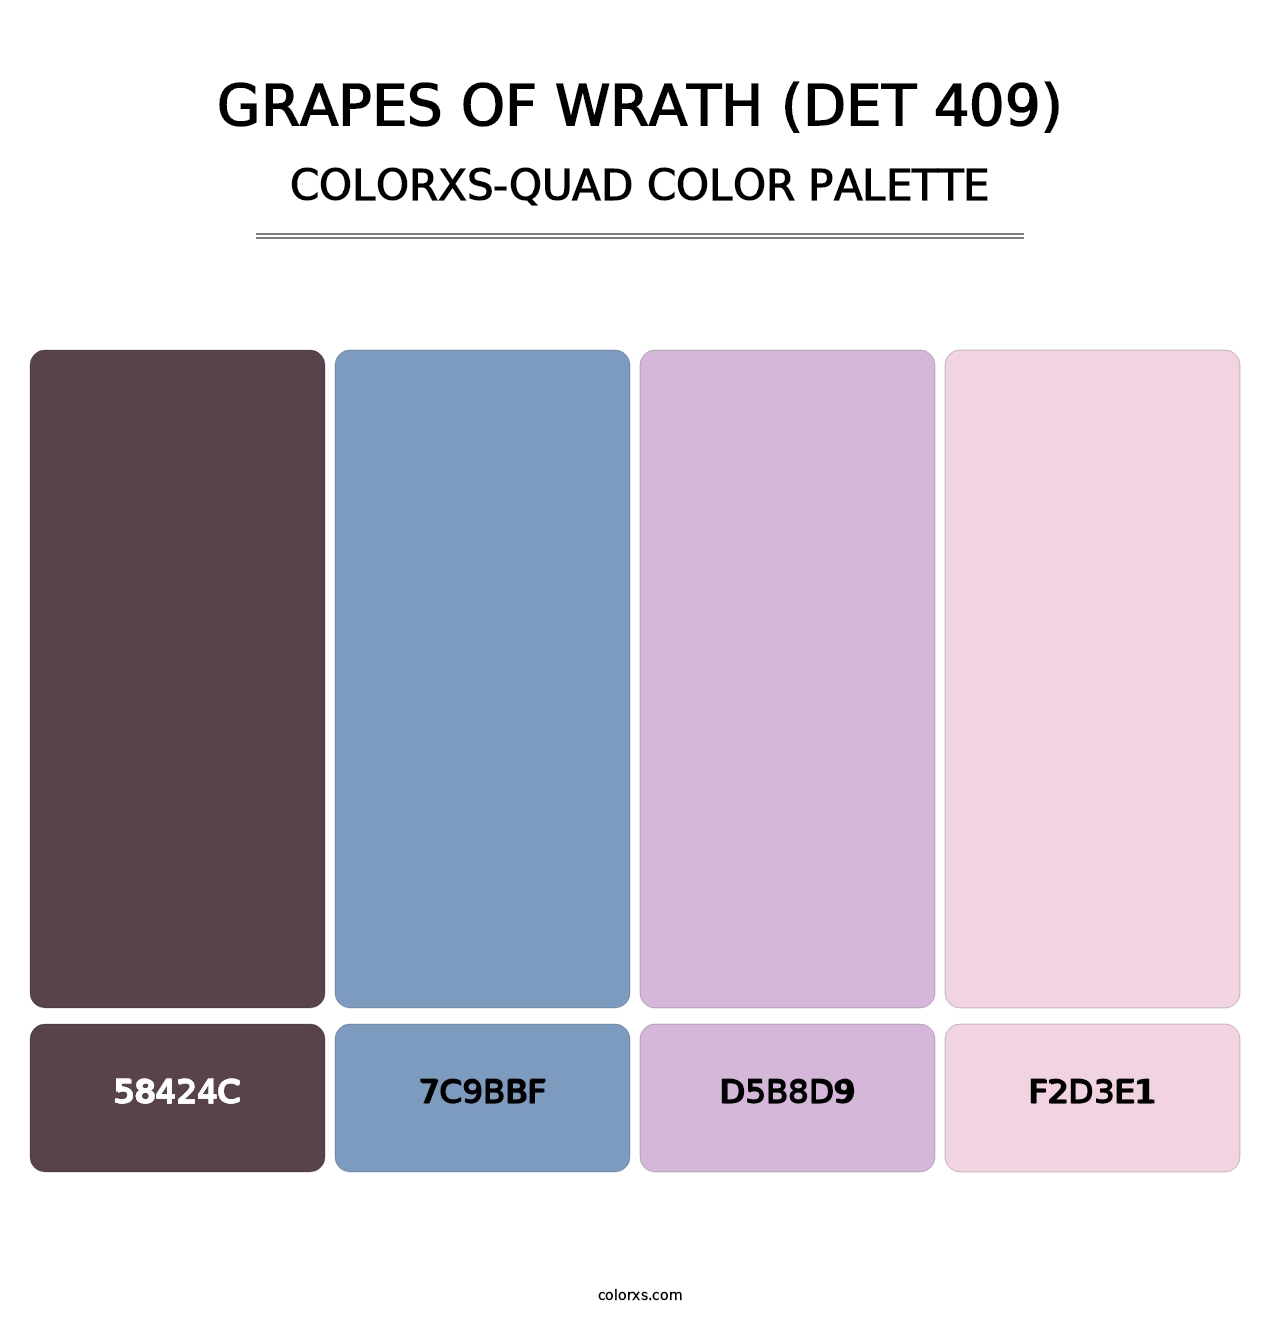 Grapes of Wrath (DET 409) - Colorxs Quad Palette